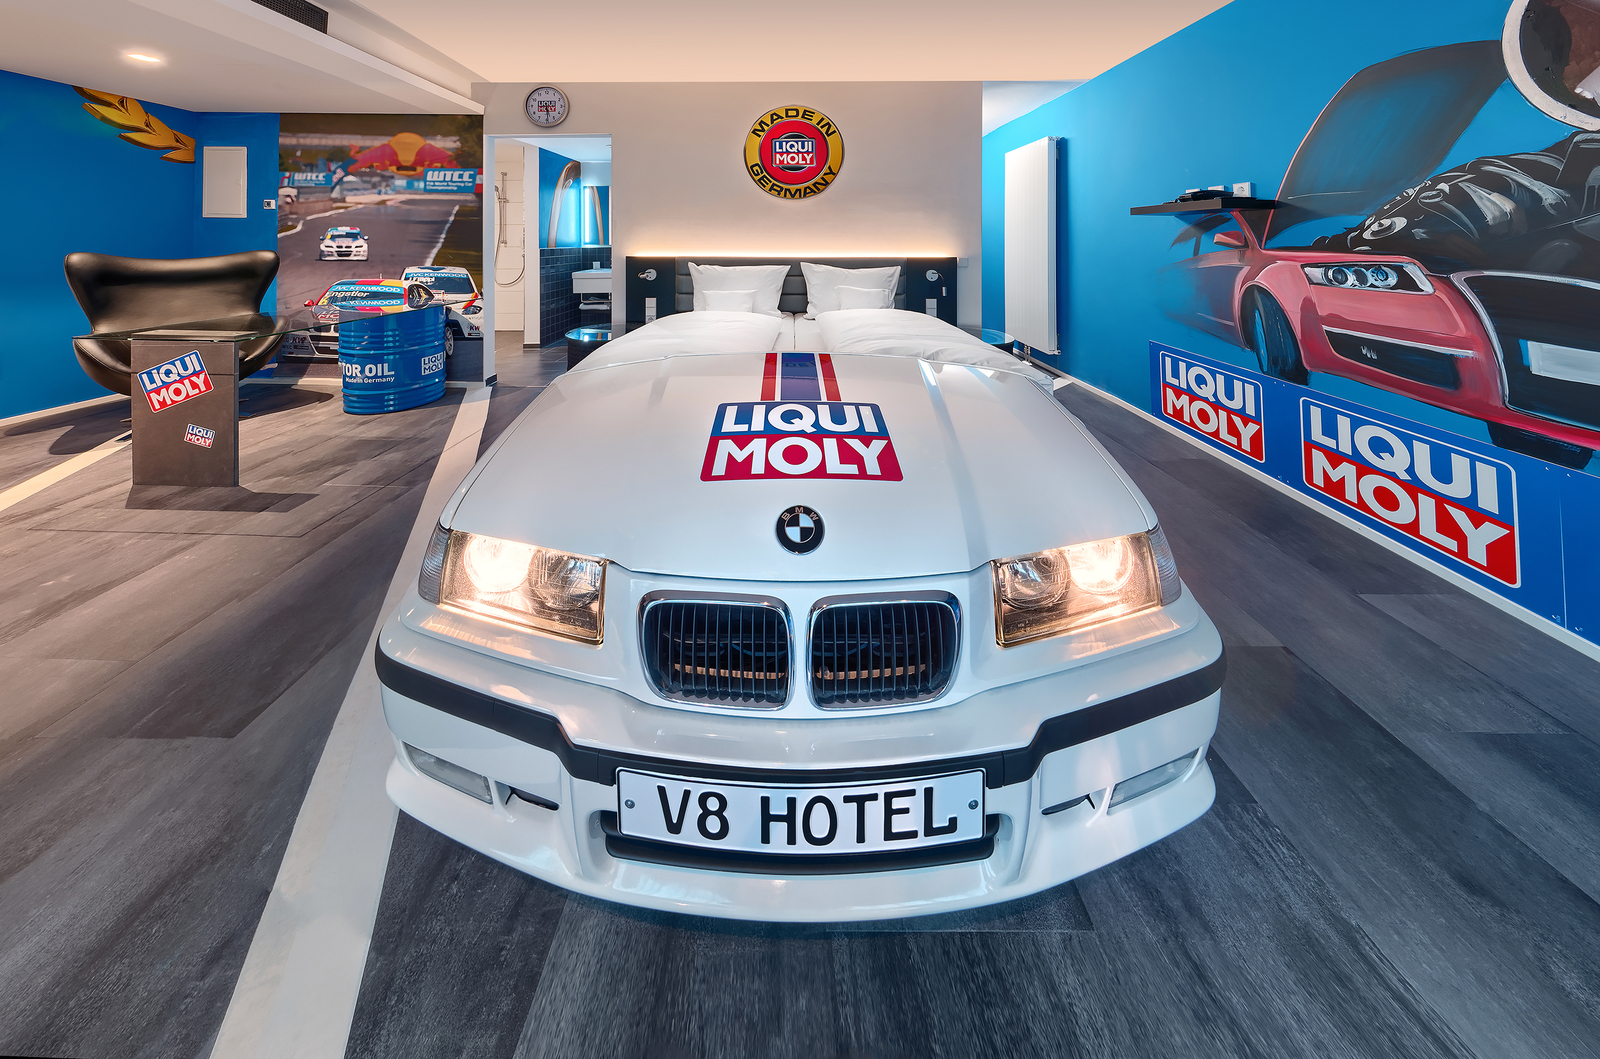 Weißes BMW Autobett im Autozimmer Liqui Moly im V8 Hotel neben einer blauen Wand mit Liqui Moly Logos.